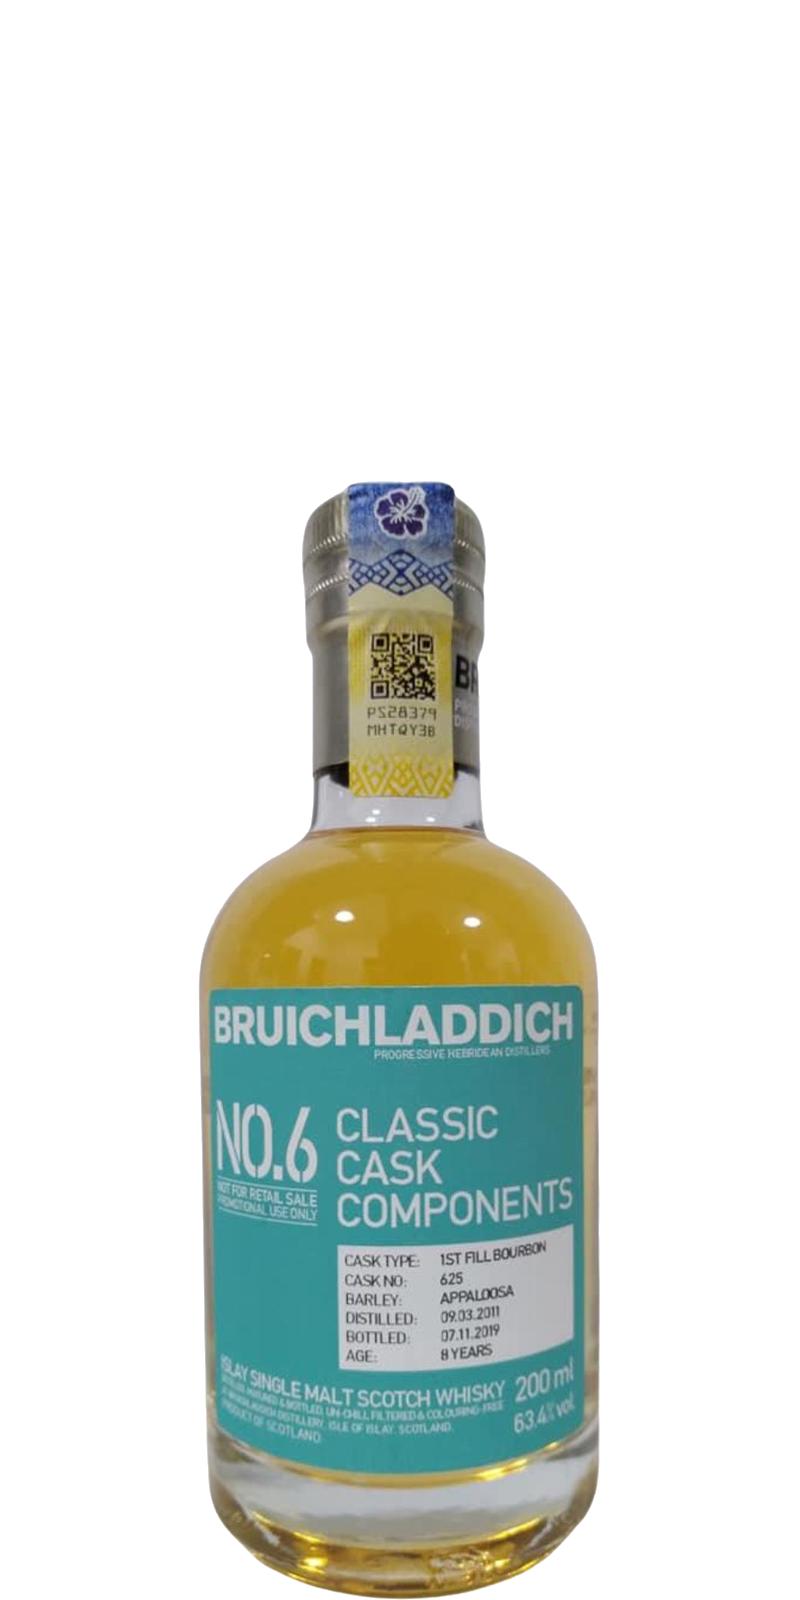 Bruichladdich 2011 Classic Cask Components No. 6 1st Fill Bourbon 625 63.4% 200ml